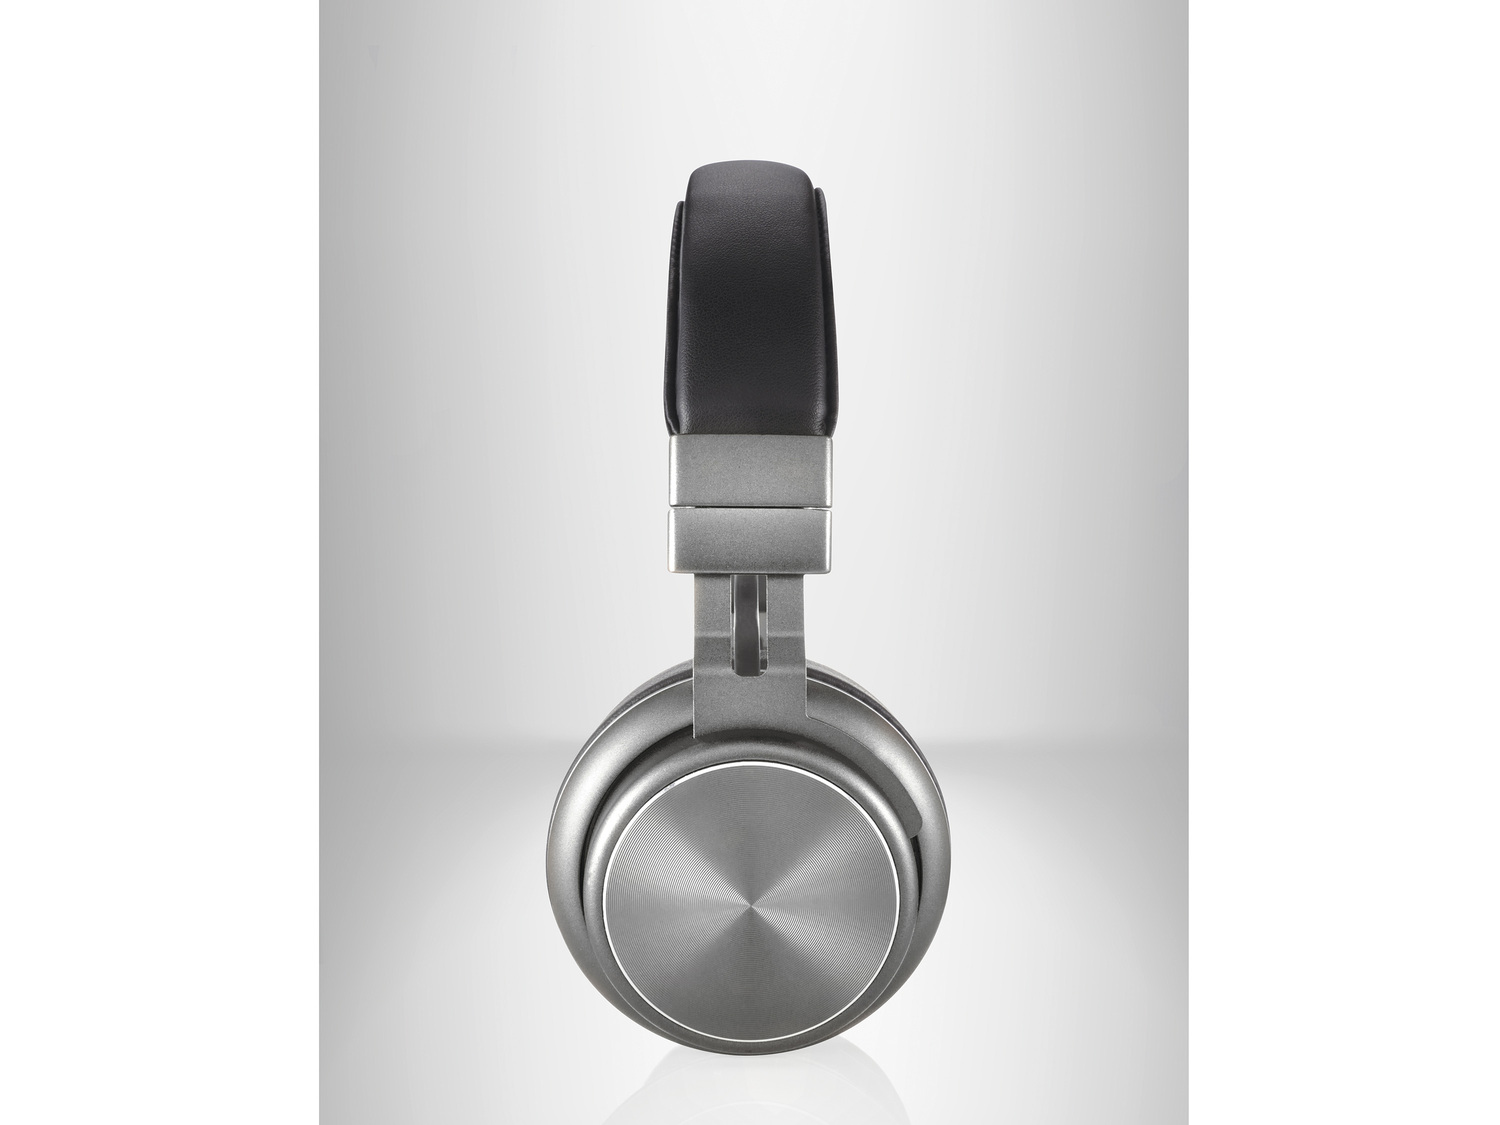 Składane słuchawki bezprzewodowe Bluetooth® Silvercrest, cena 119,00 PLN 
2 ...